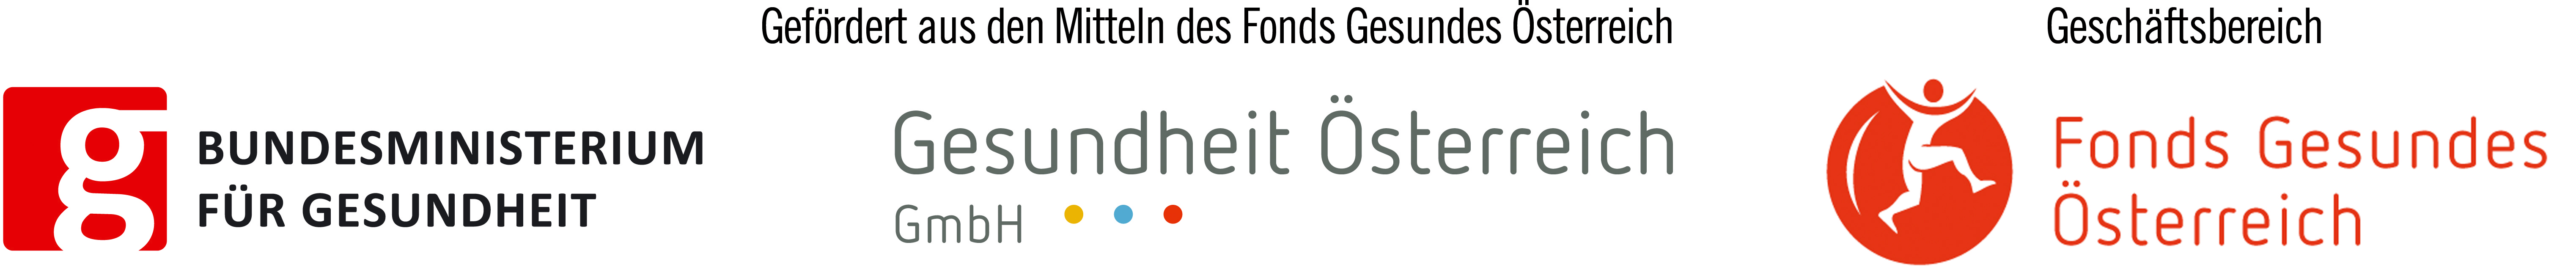 Logo Bundesministerium für Gesundheit, Gesundheit Österreich GmbH, Fond Gesundes Österreich